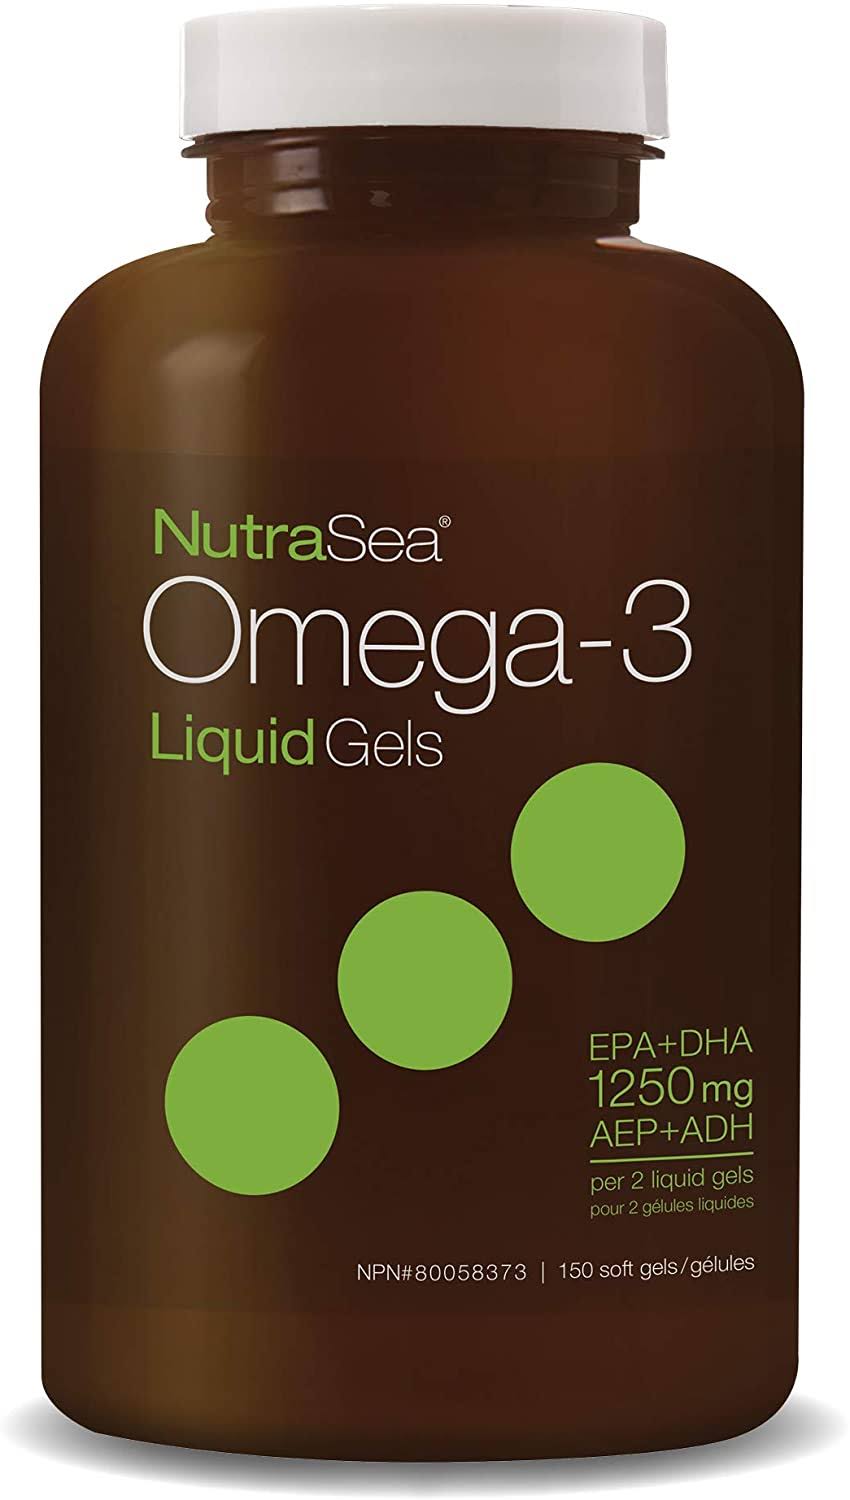 NutraSea Omega-3 Liquid Gels (60 Softgels)